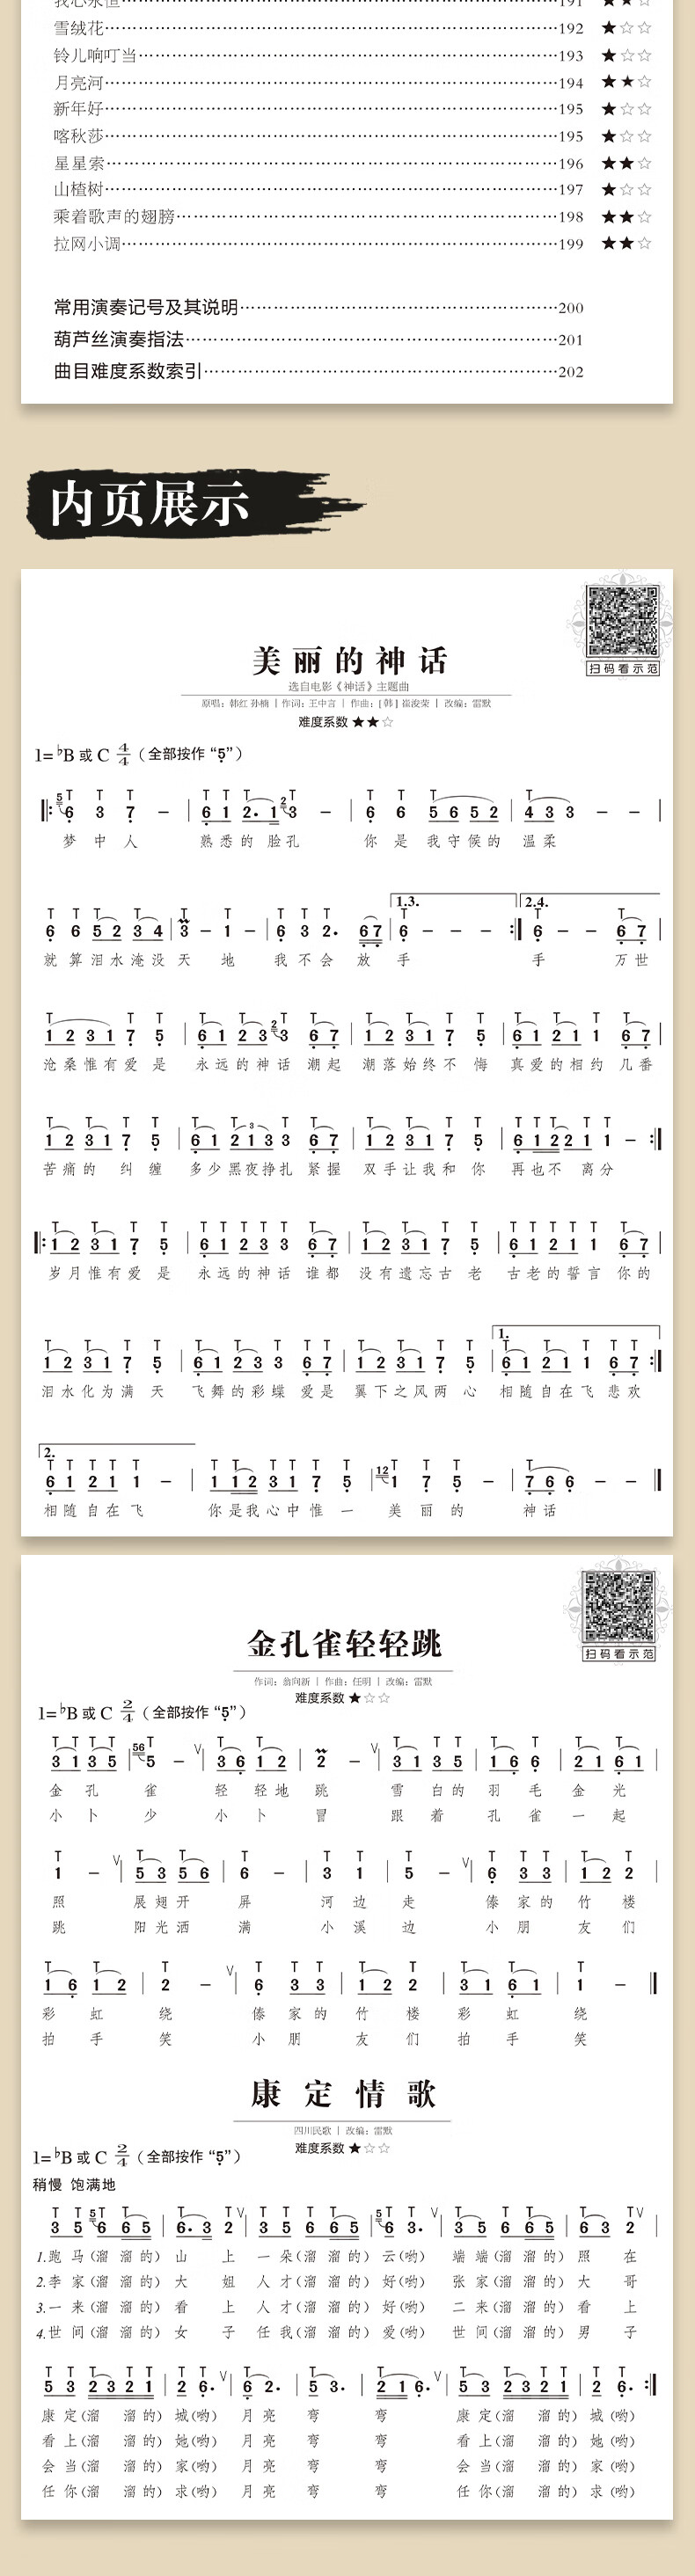 易演奏葫芦丝流行金曲176首 零基础初学者初学入门自学独奏流行歌曲